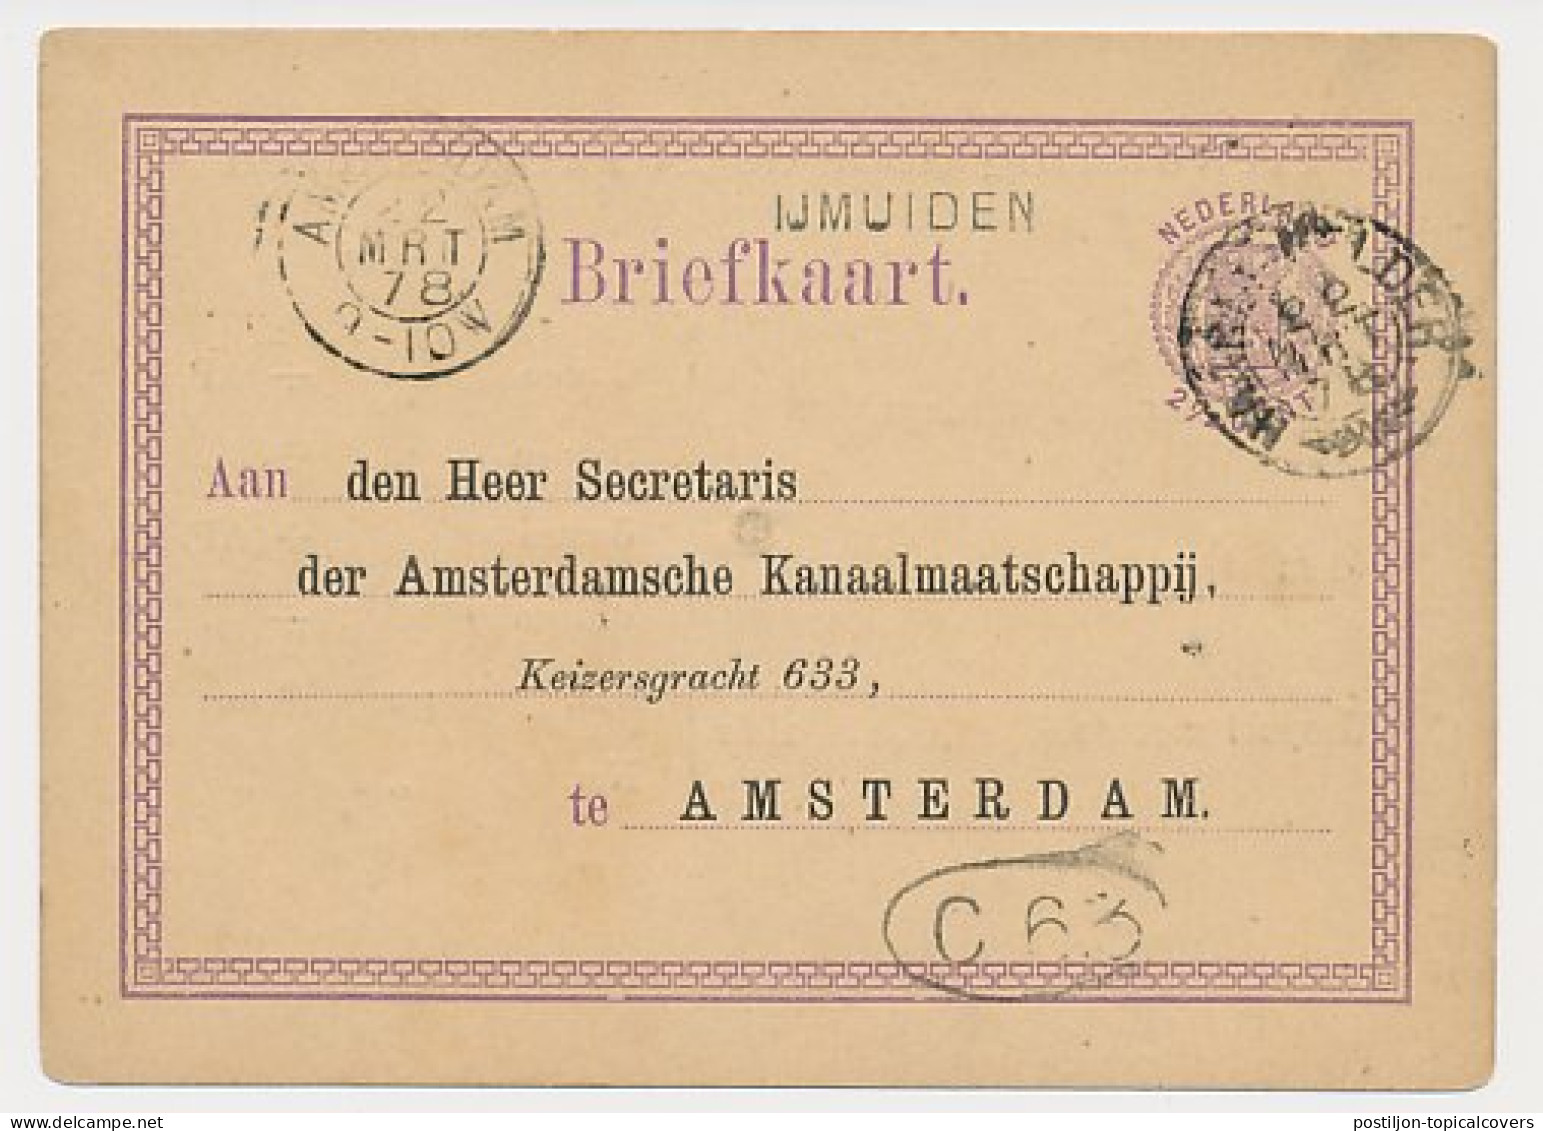 IJmuiden - Trein Takjestempel Haarlem - Helder 1878 - Briefe U. Dokumente